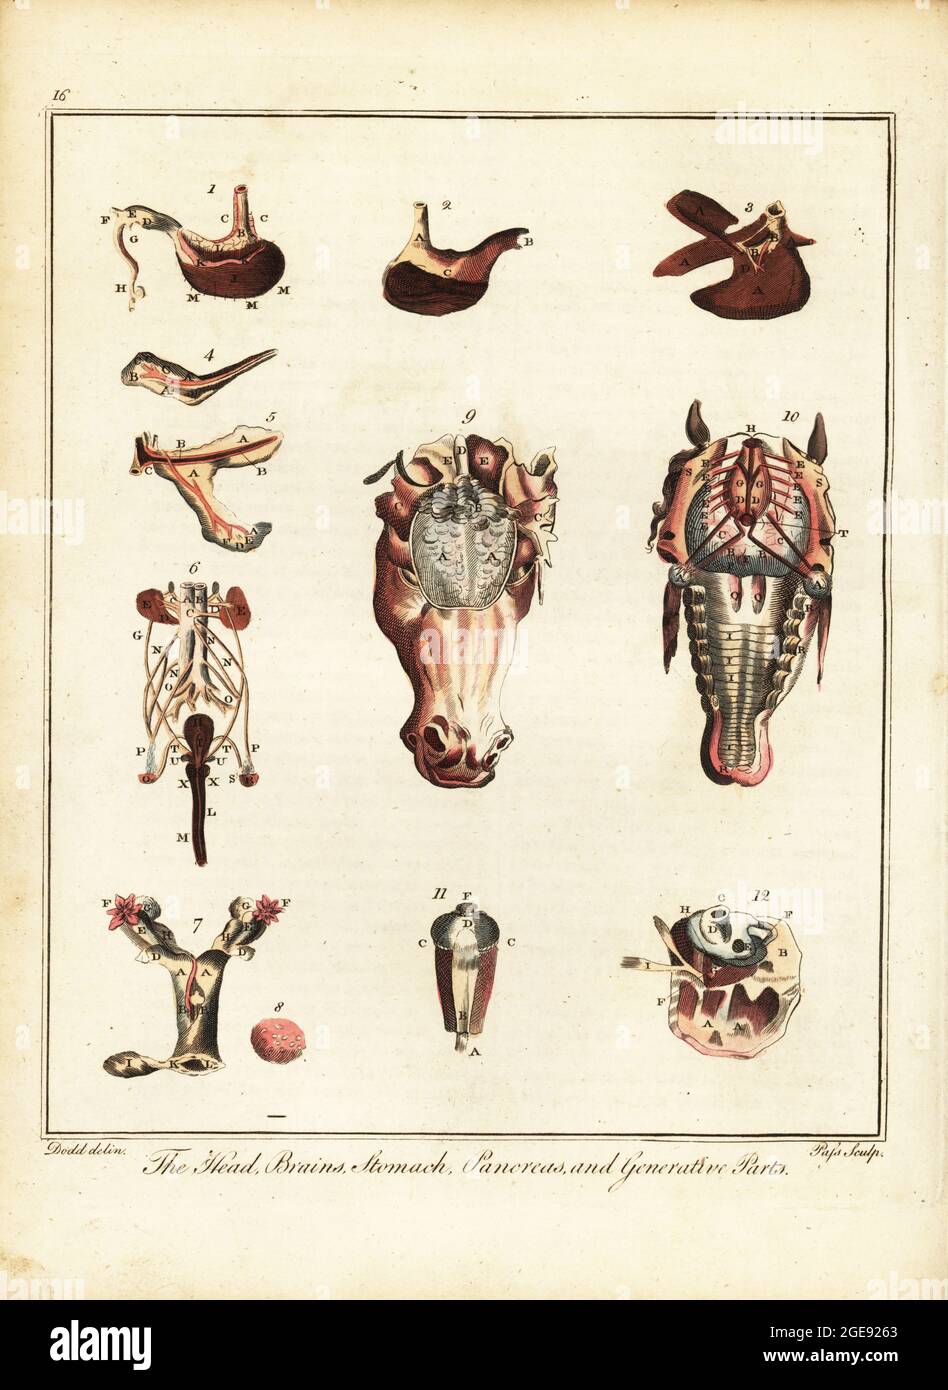 Anatomia di un cavallo. La testa, il cervello, lo stomaco, il pancreas e le parti generative. Stomaco 1,2, fegato 3, milza 4, pancreas 5, reni 6, utero 7, ovaie 8, cervello 9, sistema nervoso 10, occhio 11, orecchio 12. Incisione a mano su copperplate di J. Pass dopo un'illustrazione di Daniel Dodd/J. Stead from The British Sportsman di William Augustus Obaldiston, o nobiluomo, Gentleman and Farmer’s Dictionary of Recreation and Amusement, J. Stead, Londra, 1792. Foto Stock